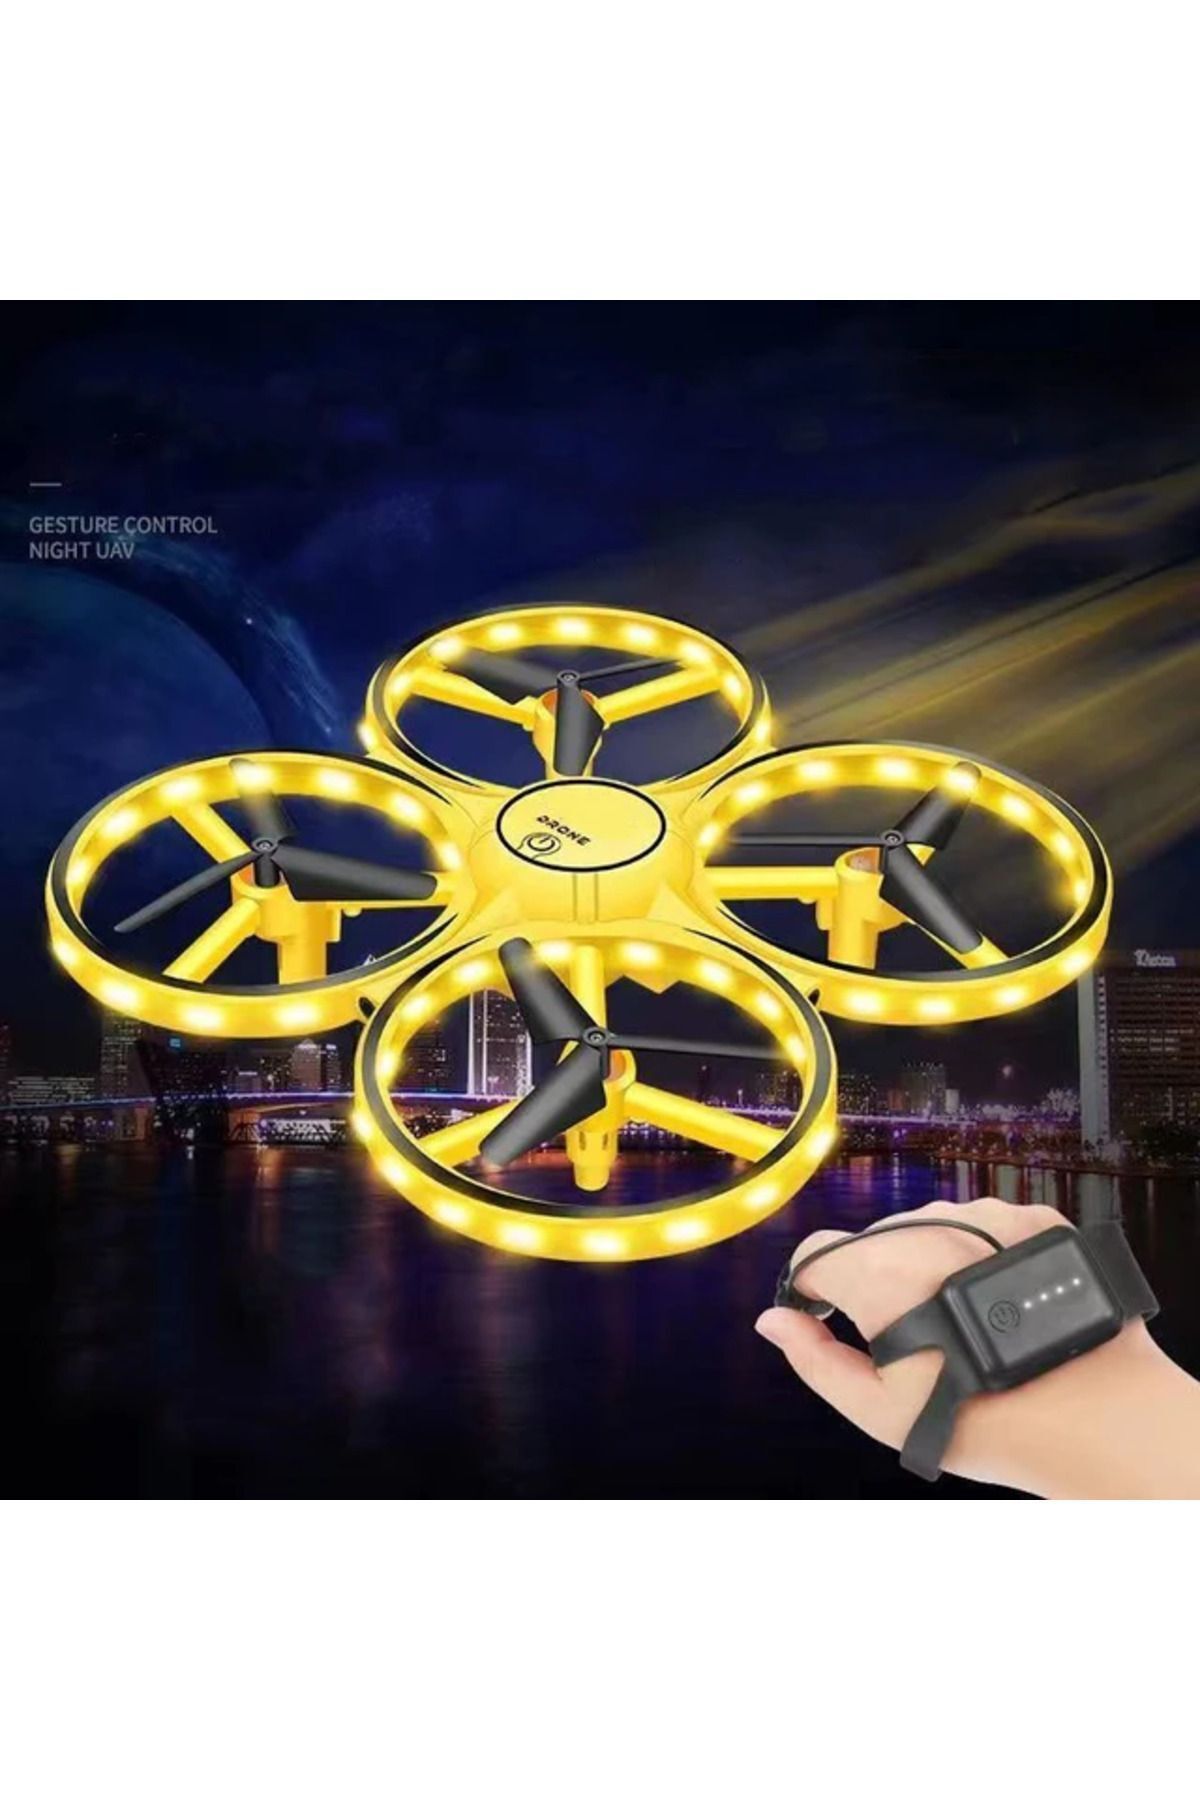 Fable Hareket Kontrollü RC Drone! El Sensörü, Akıllı Saat Kontrollü, 360° Döndürme, LED Işık, 3 Mod